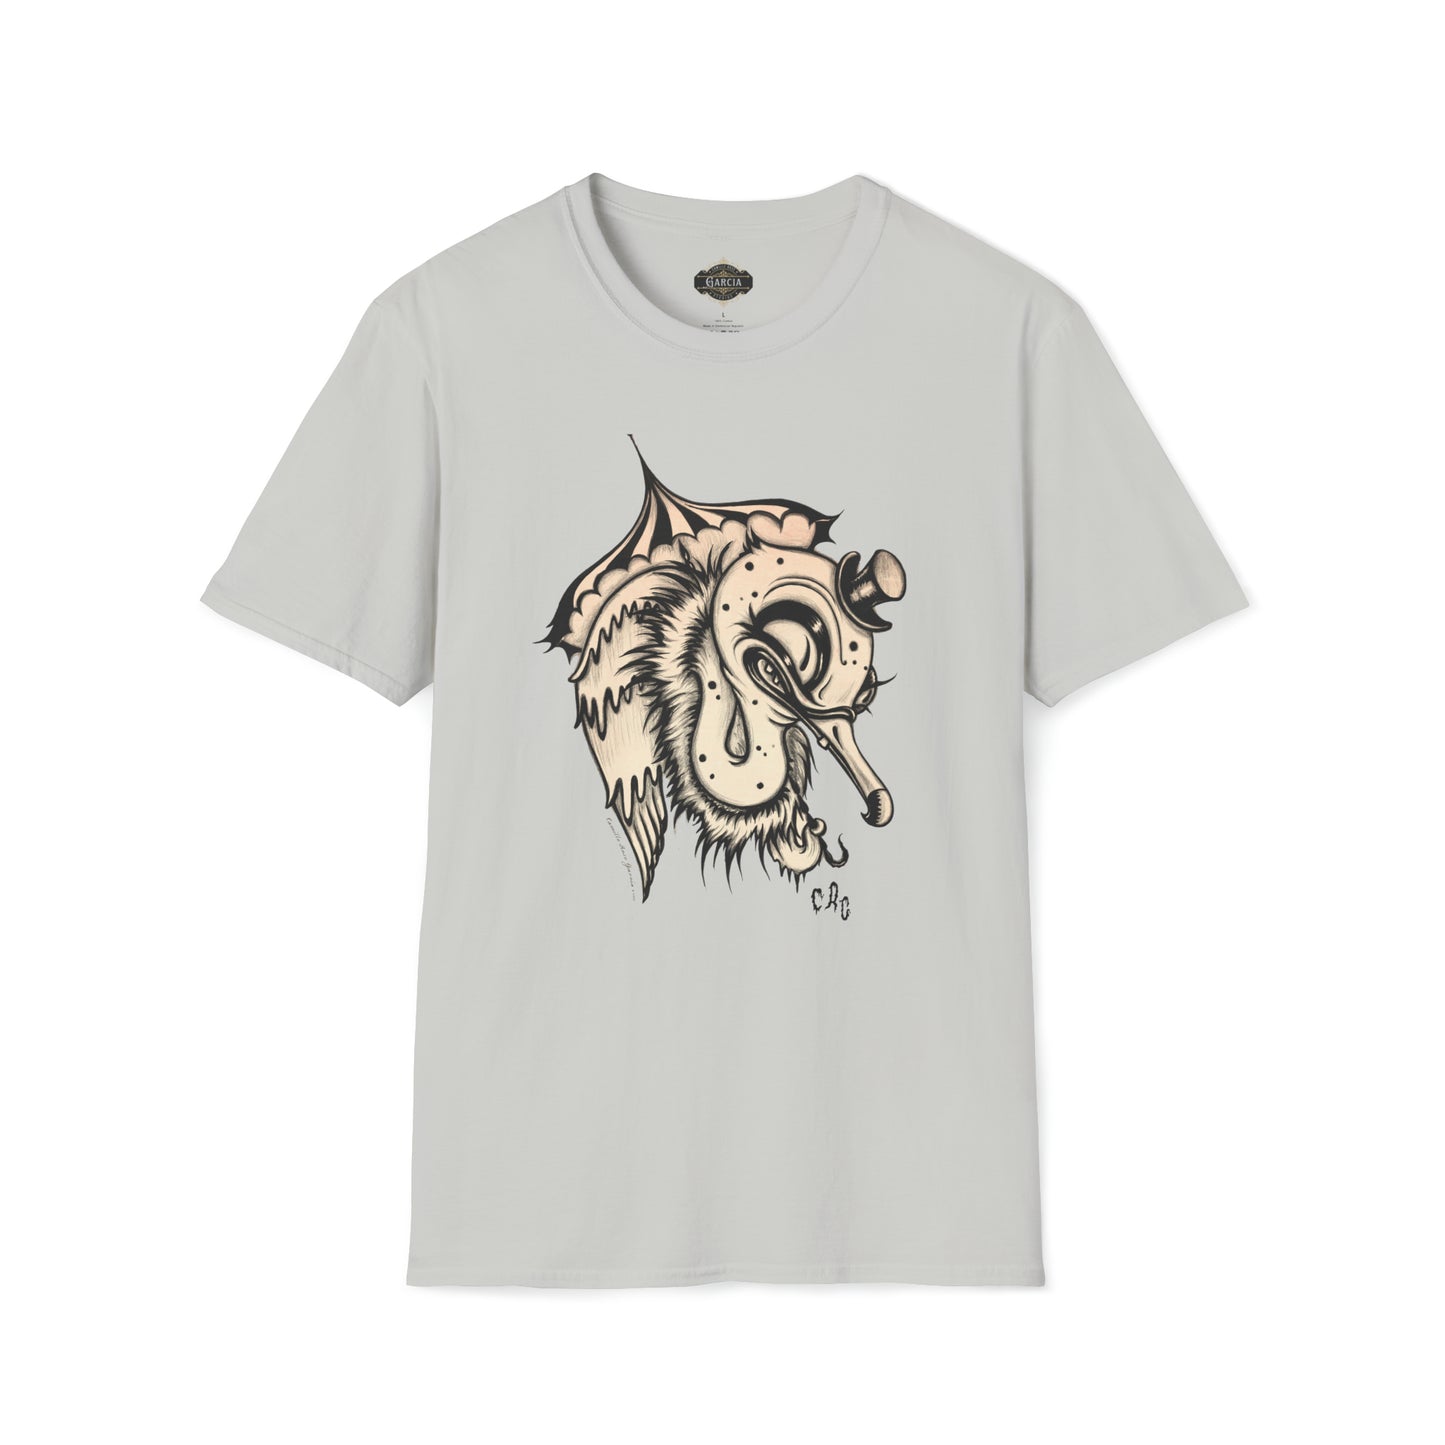 "Vulture Love" Unisex T-Shirt